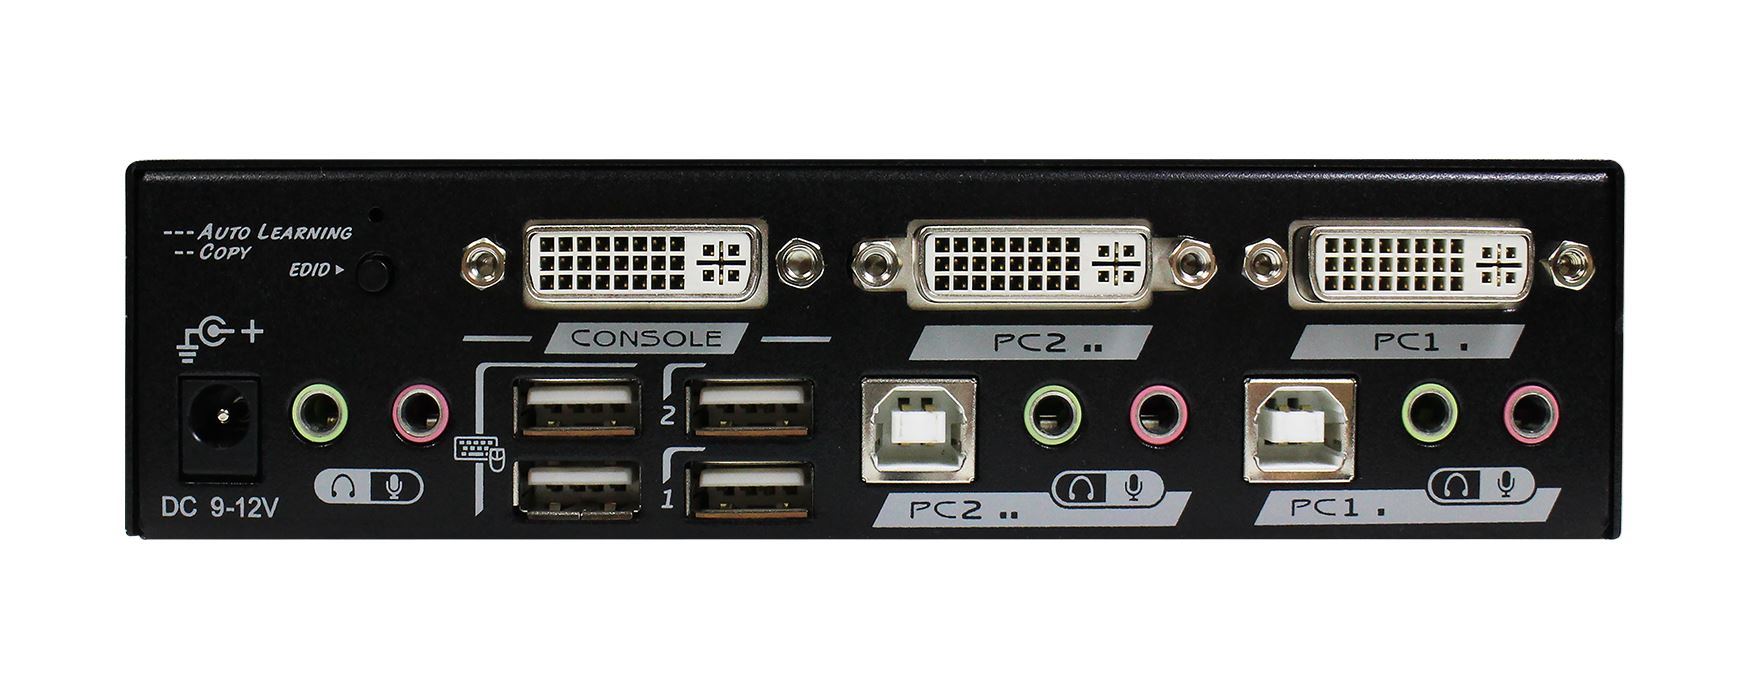 REXTRON 2 Port DVI/USB KVM Switch with Audio, Black Colour.